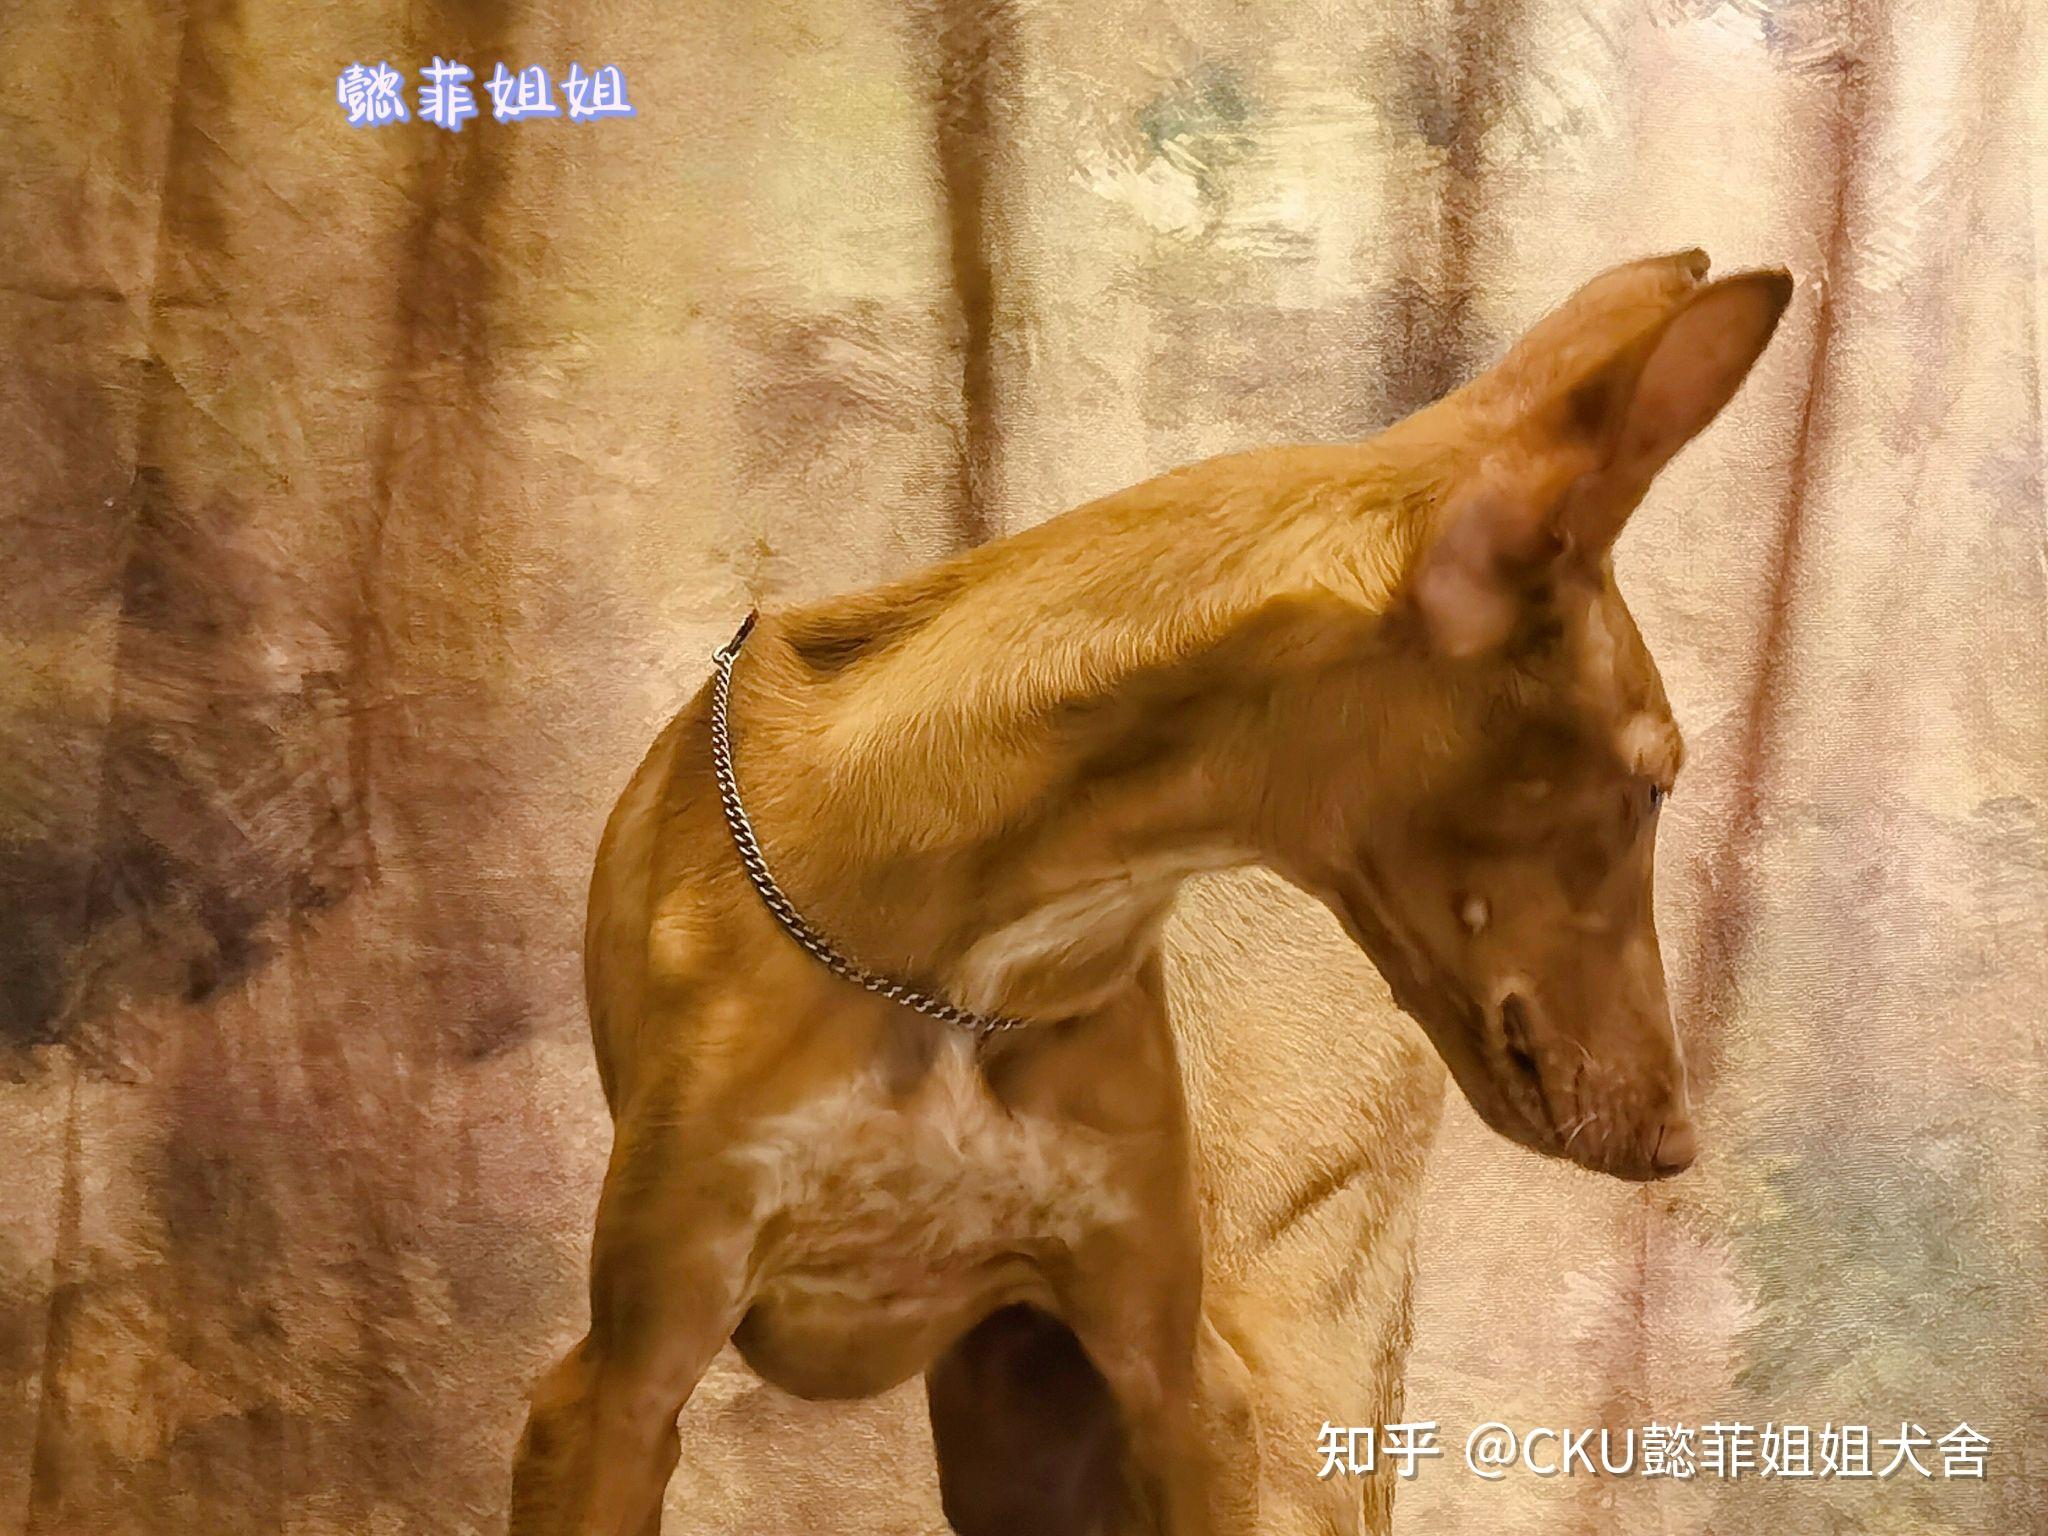 法老王猎犬跑在自然绿色背景 库存图片. 图片 包括有 法老王猎犬跑在自然绿色背景 - 130049949